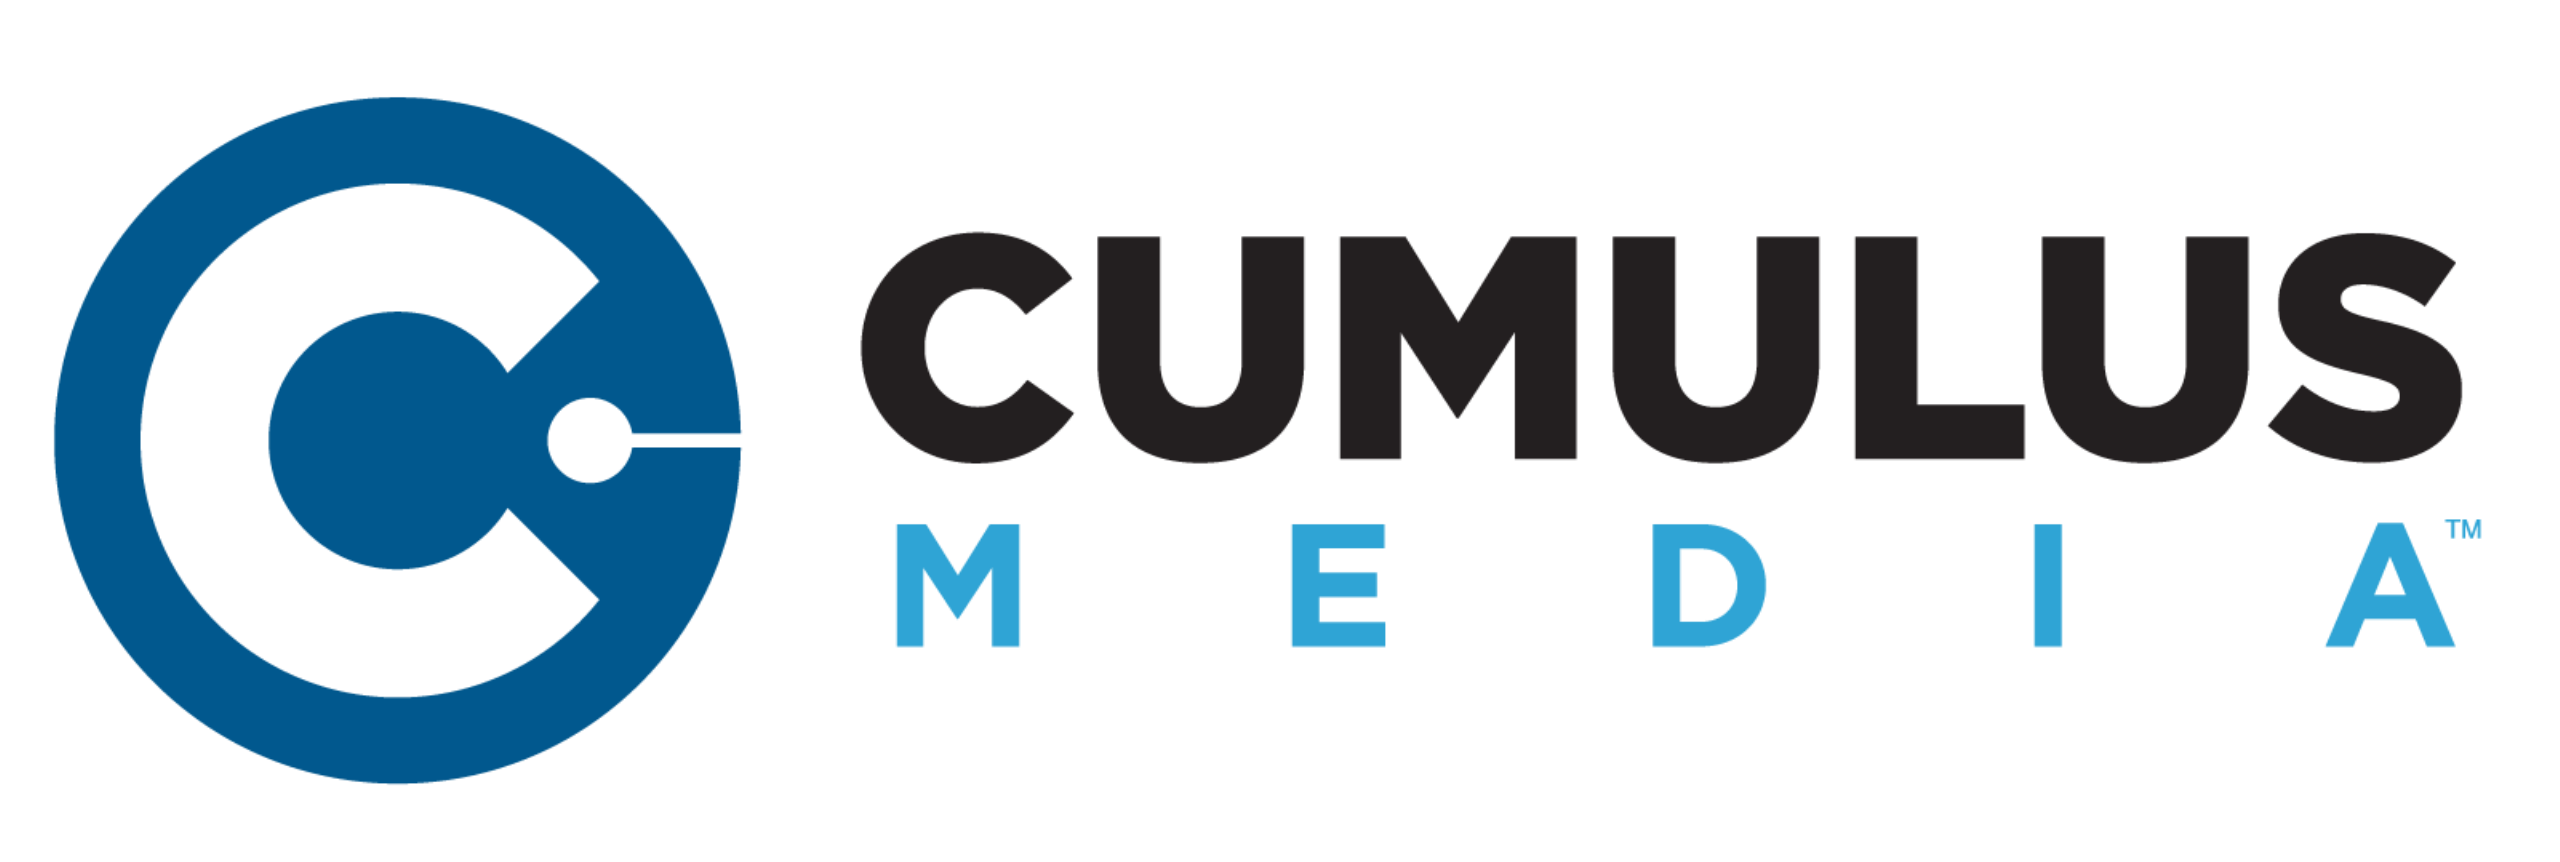 Cumulus Radio Logo